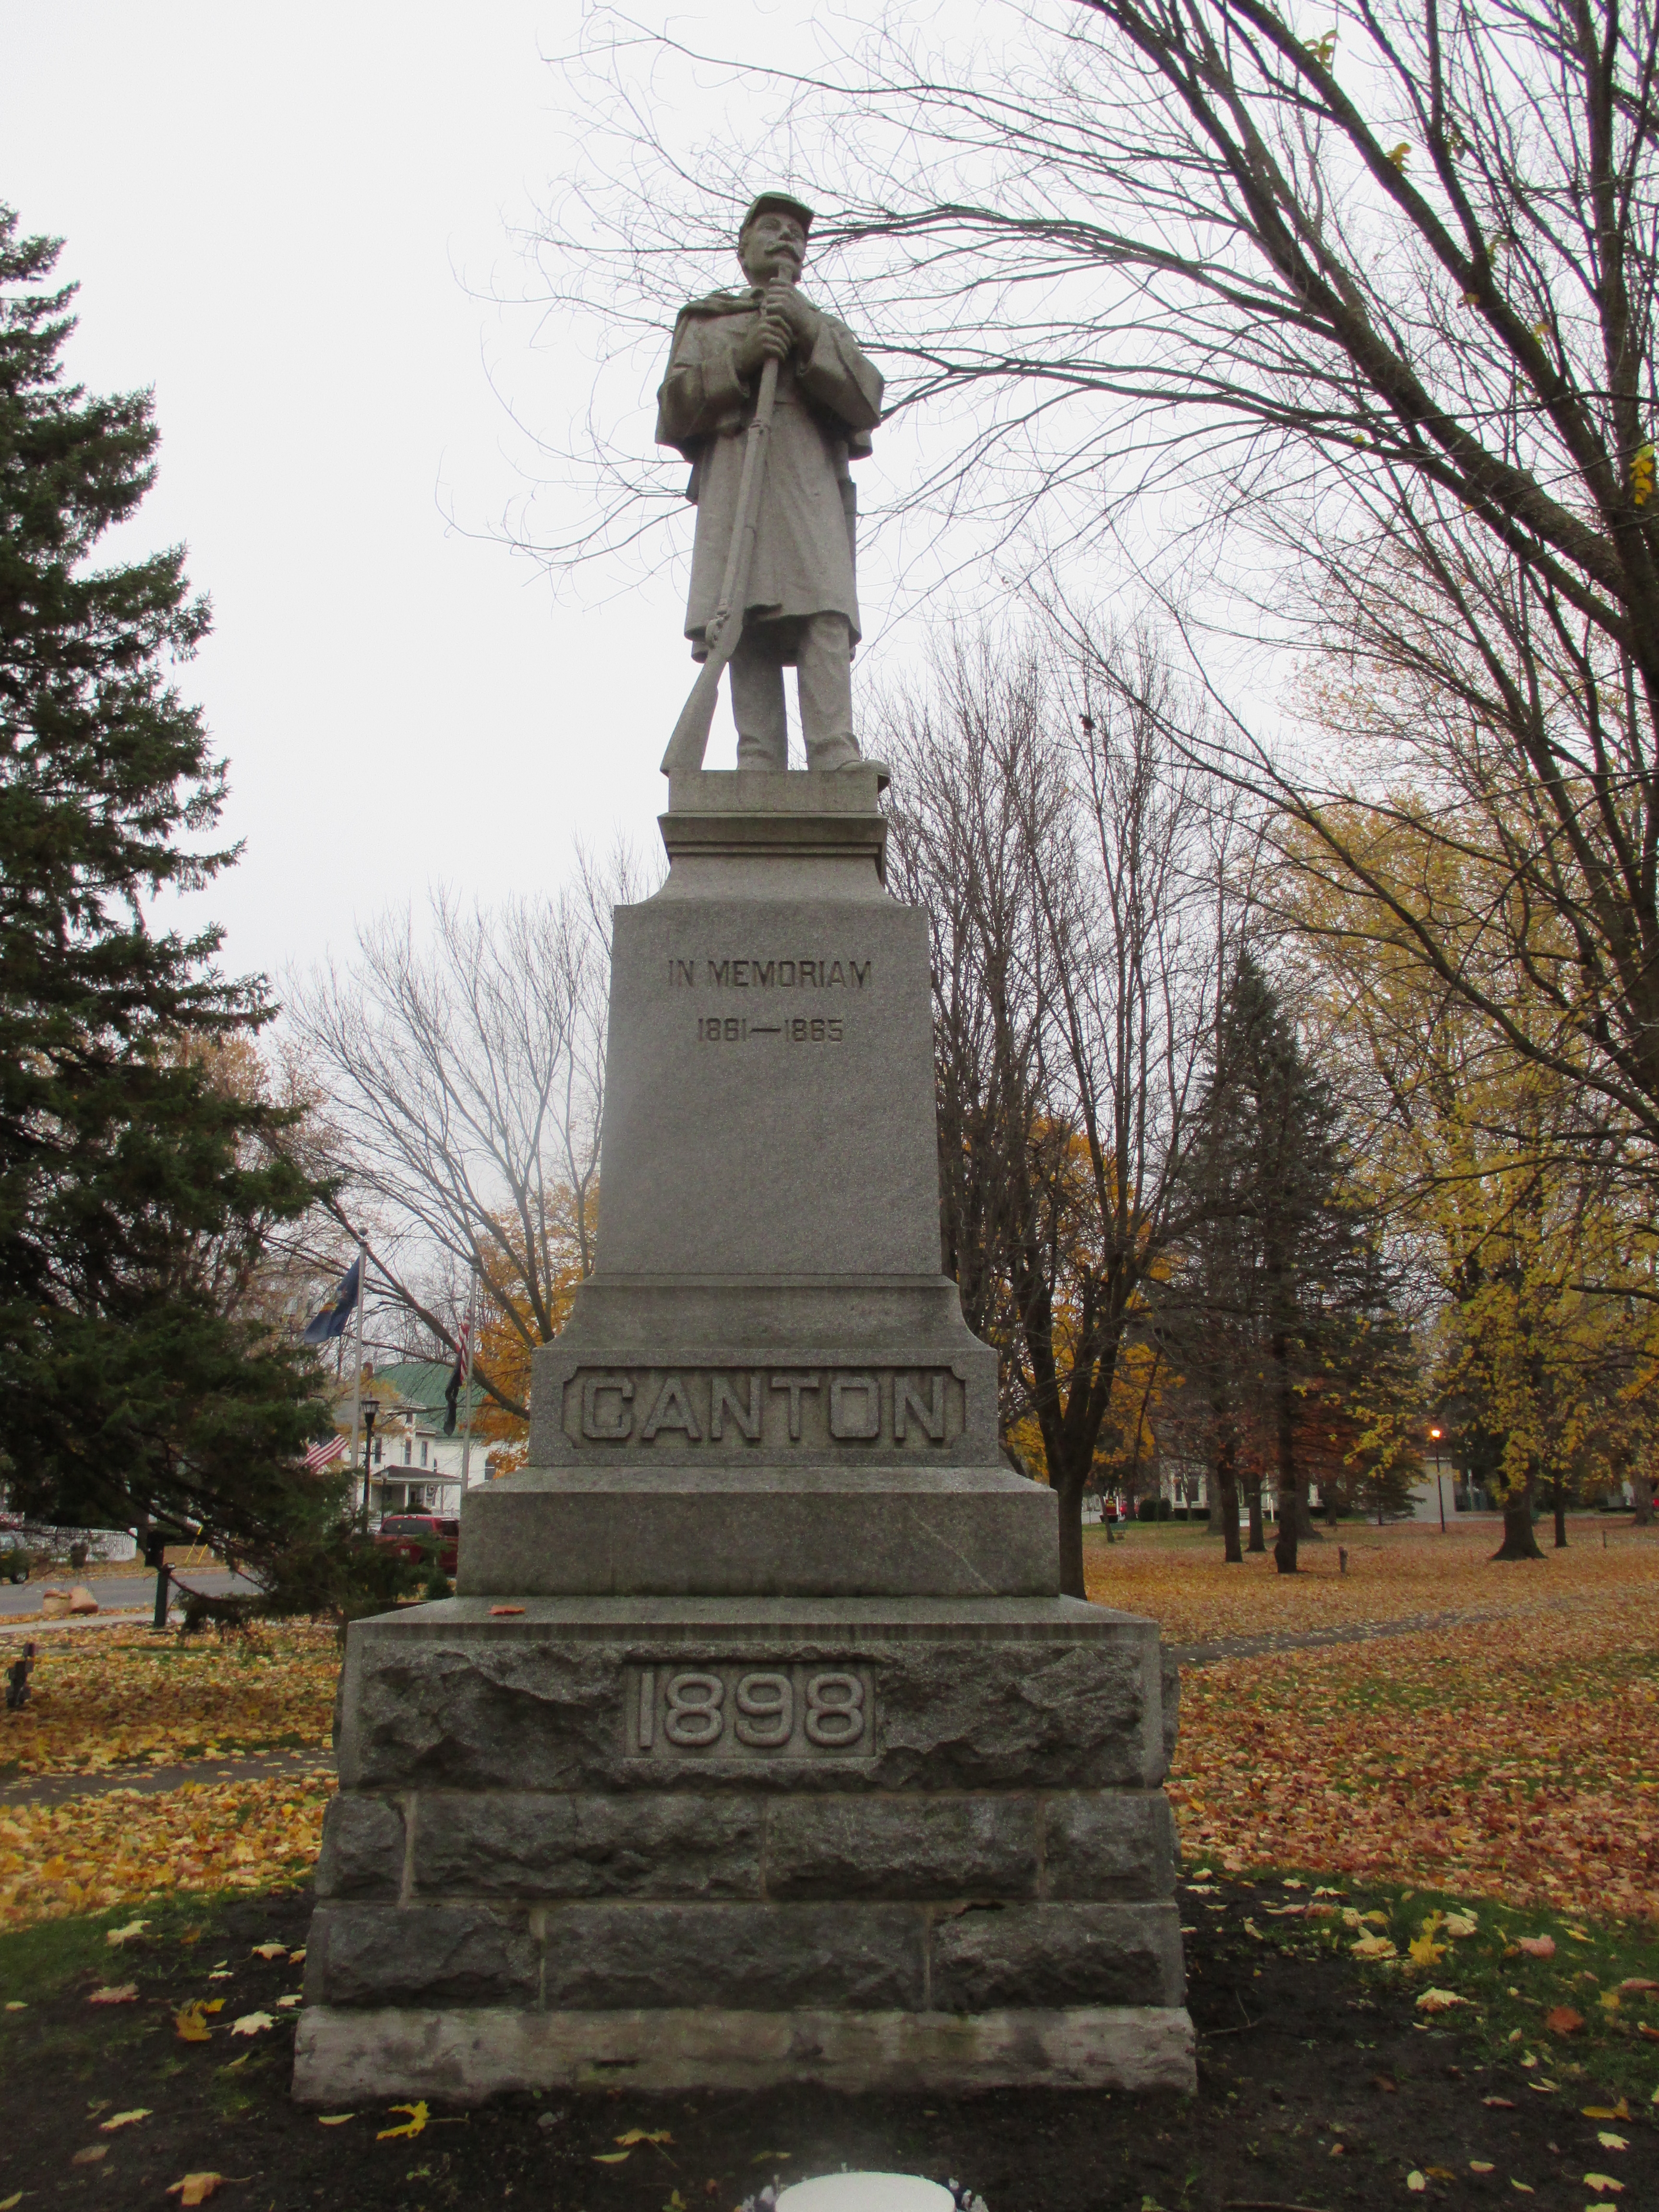 Canton Civil War Memorial